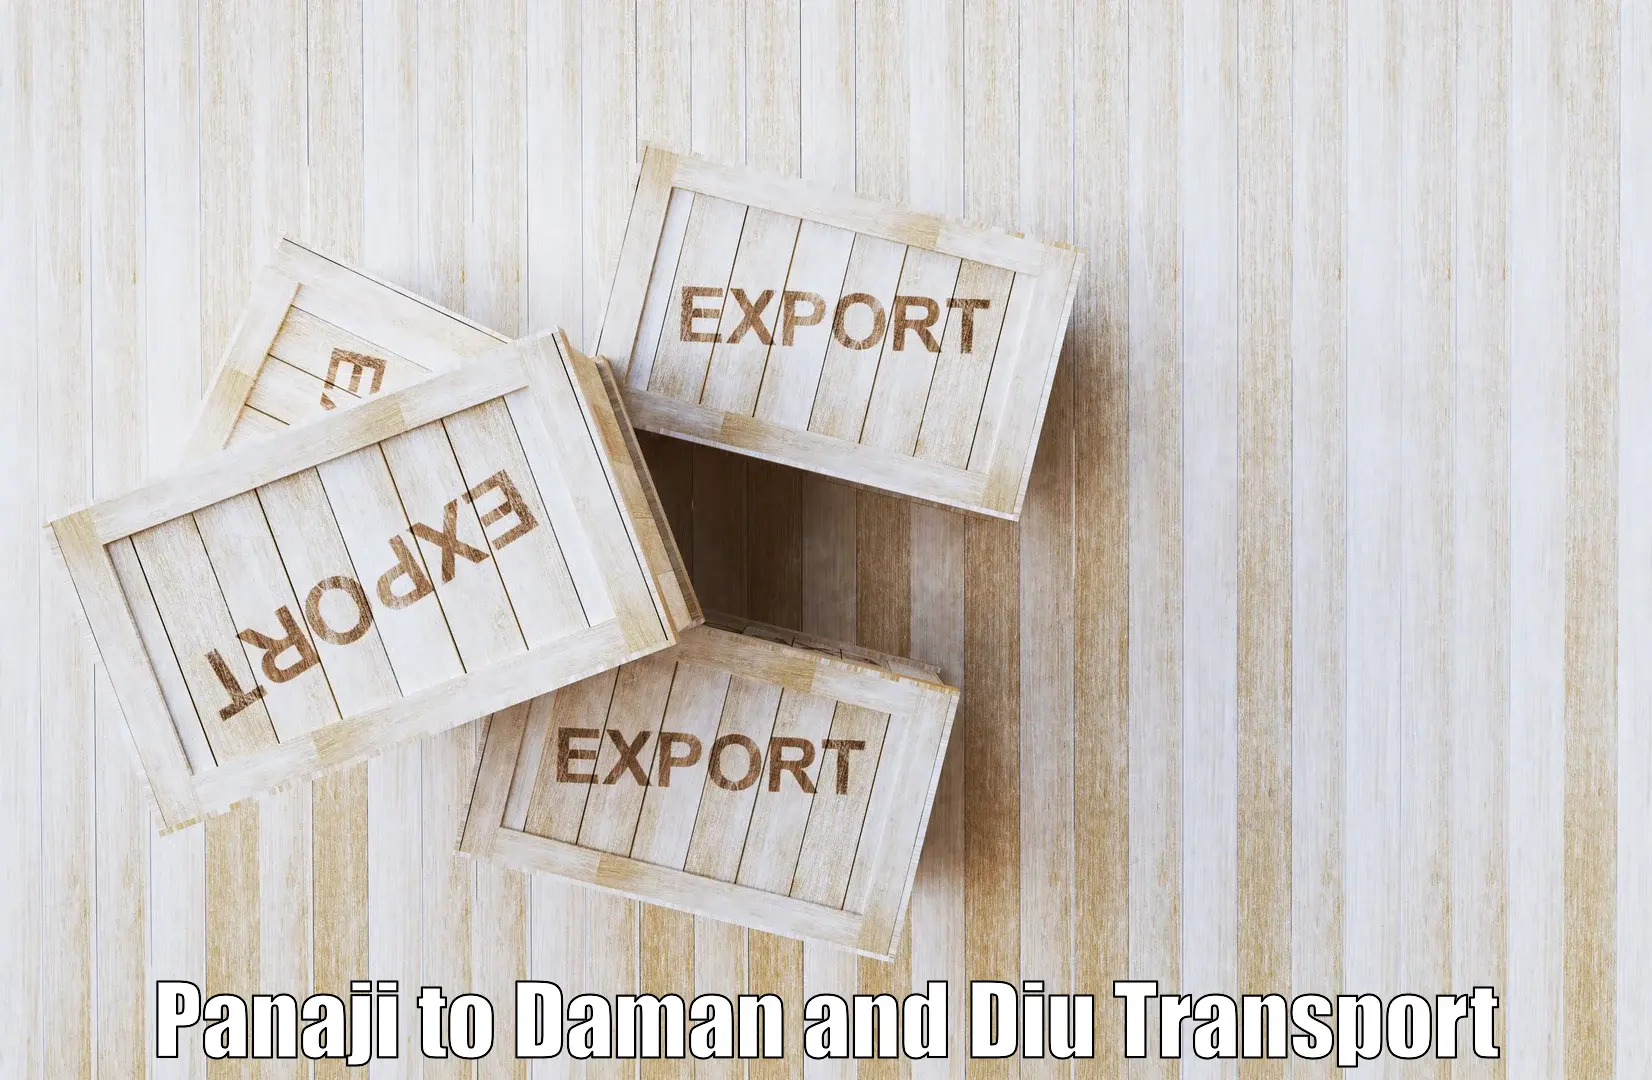 Daily transport service Panaji to Daman and Diu